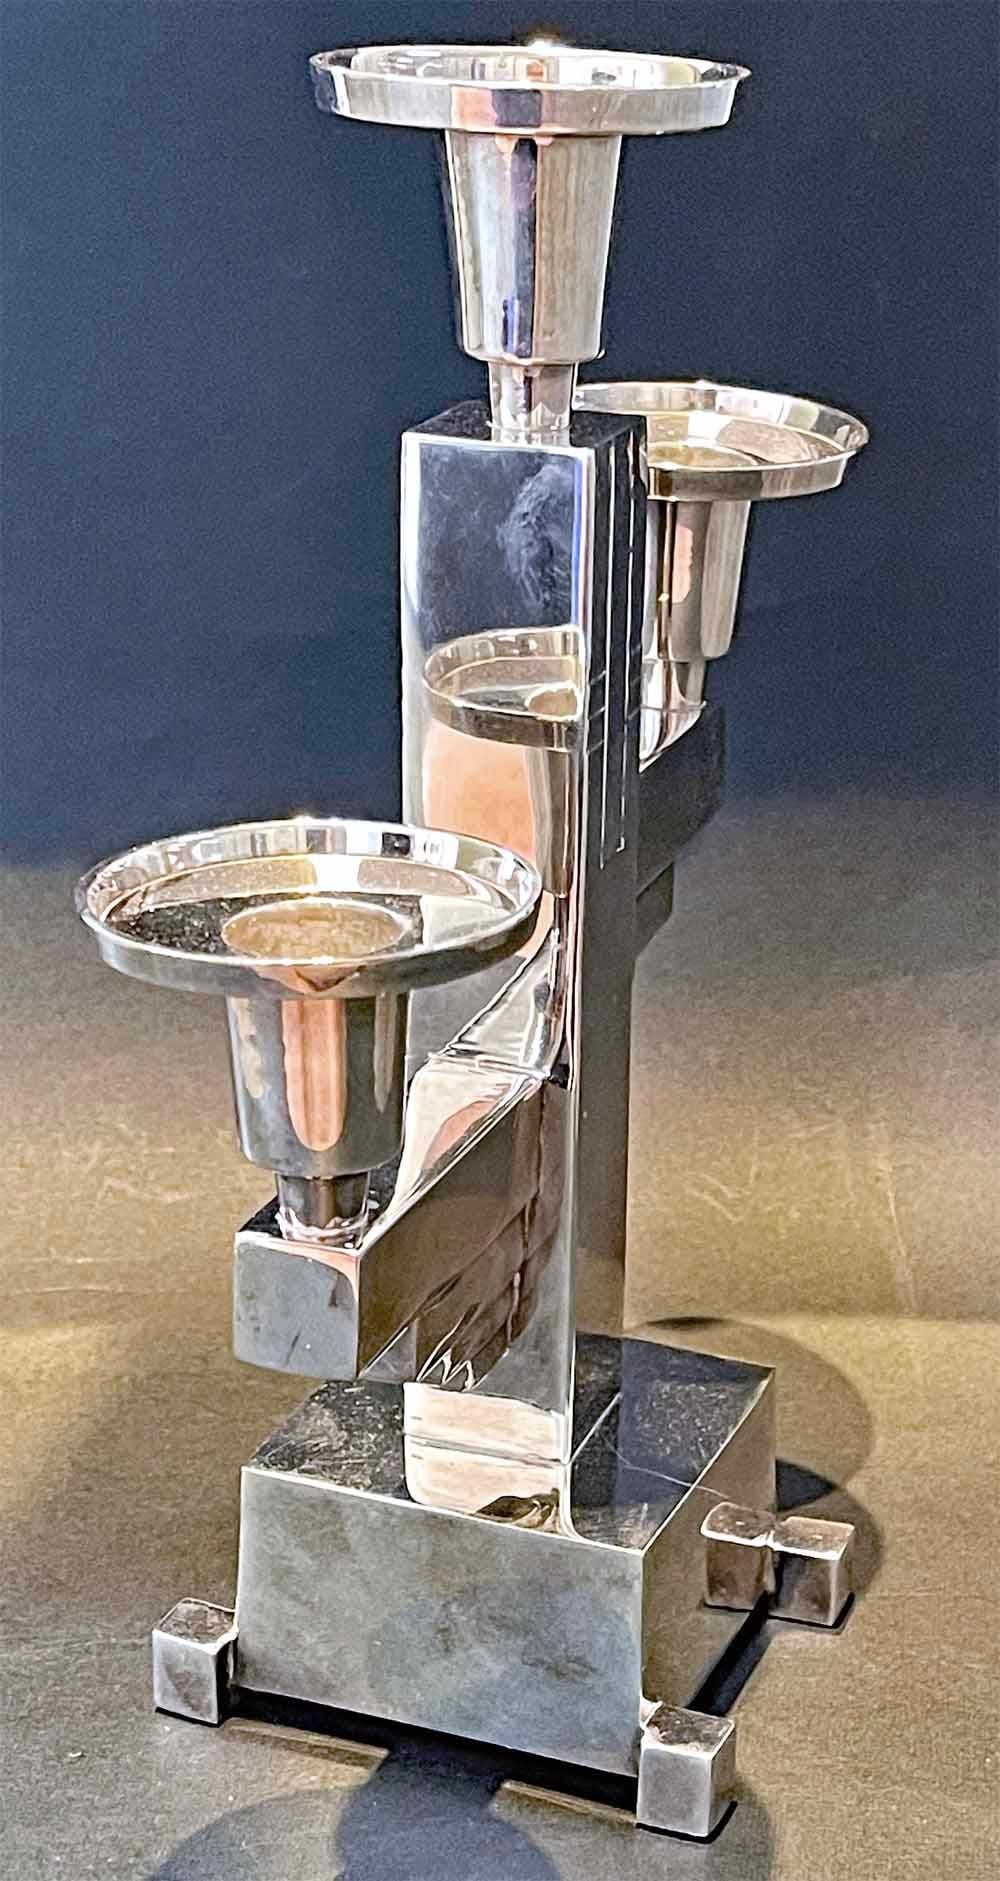 Dieser seltene und auffällige Kandelaber im High Style Deco verfügt über drei Kerzenfüße, von denen einer oben auf einem Pfosten mit eingeschnittenen geometrischen Verzierungen sitzt, während die beiden unteren auf vorspringenden horizontalen Stäben